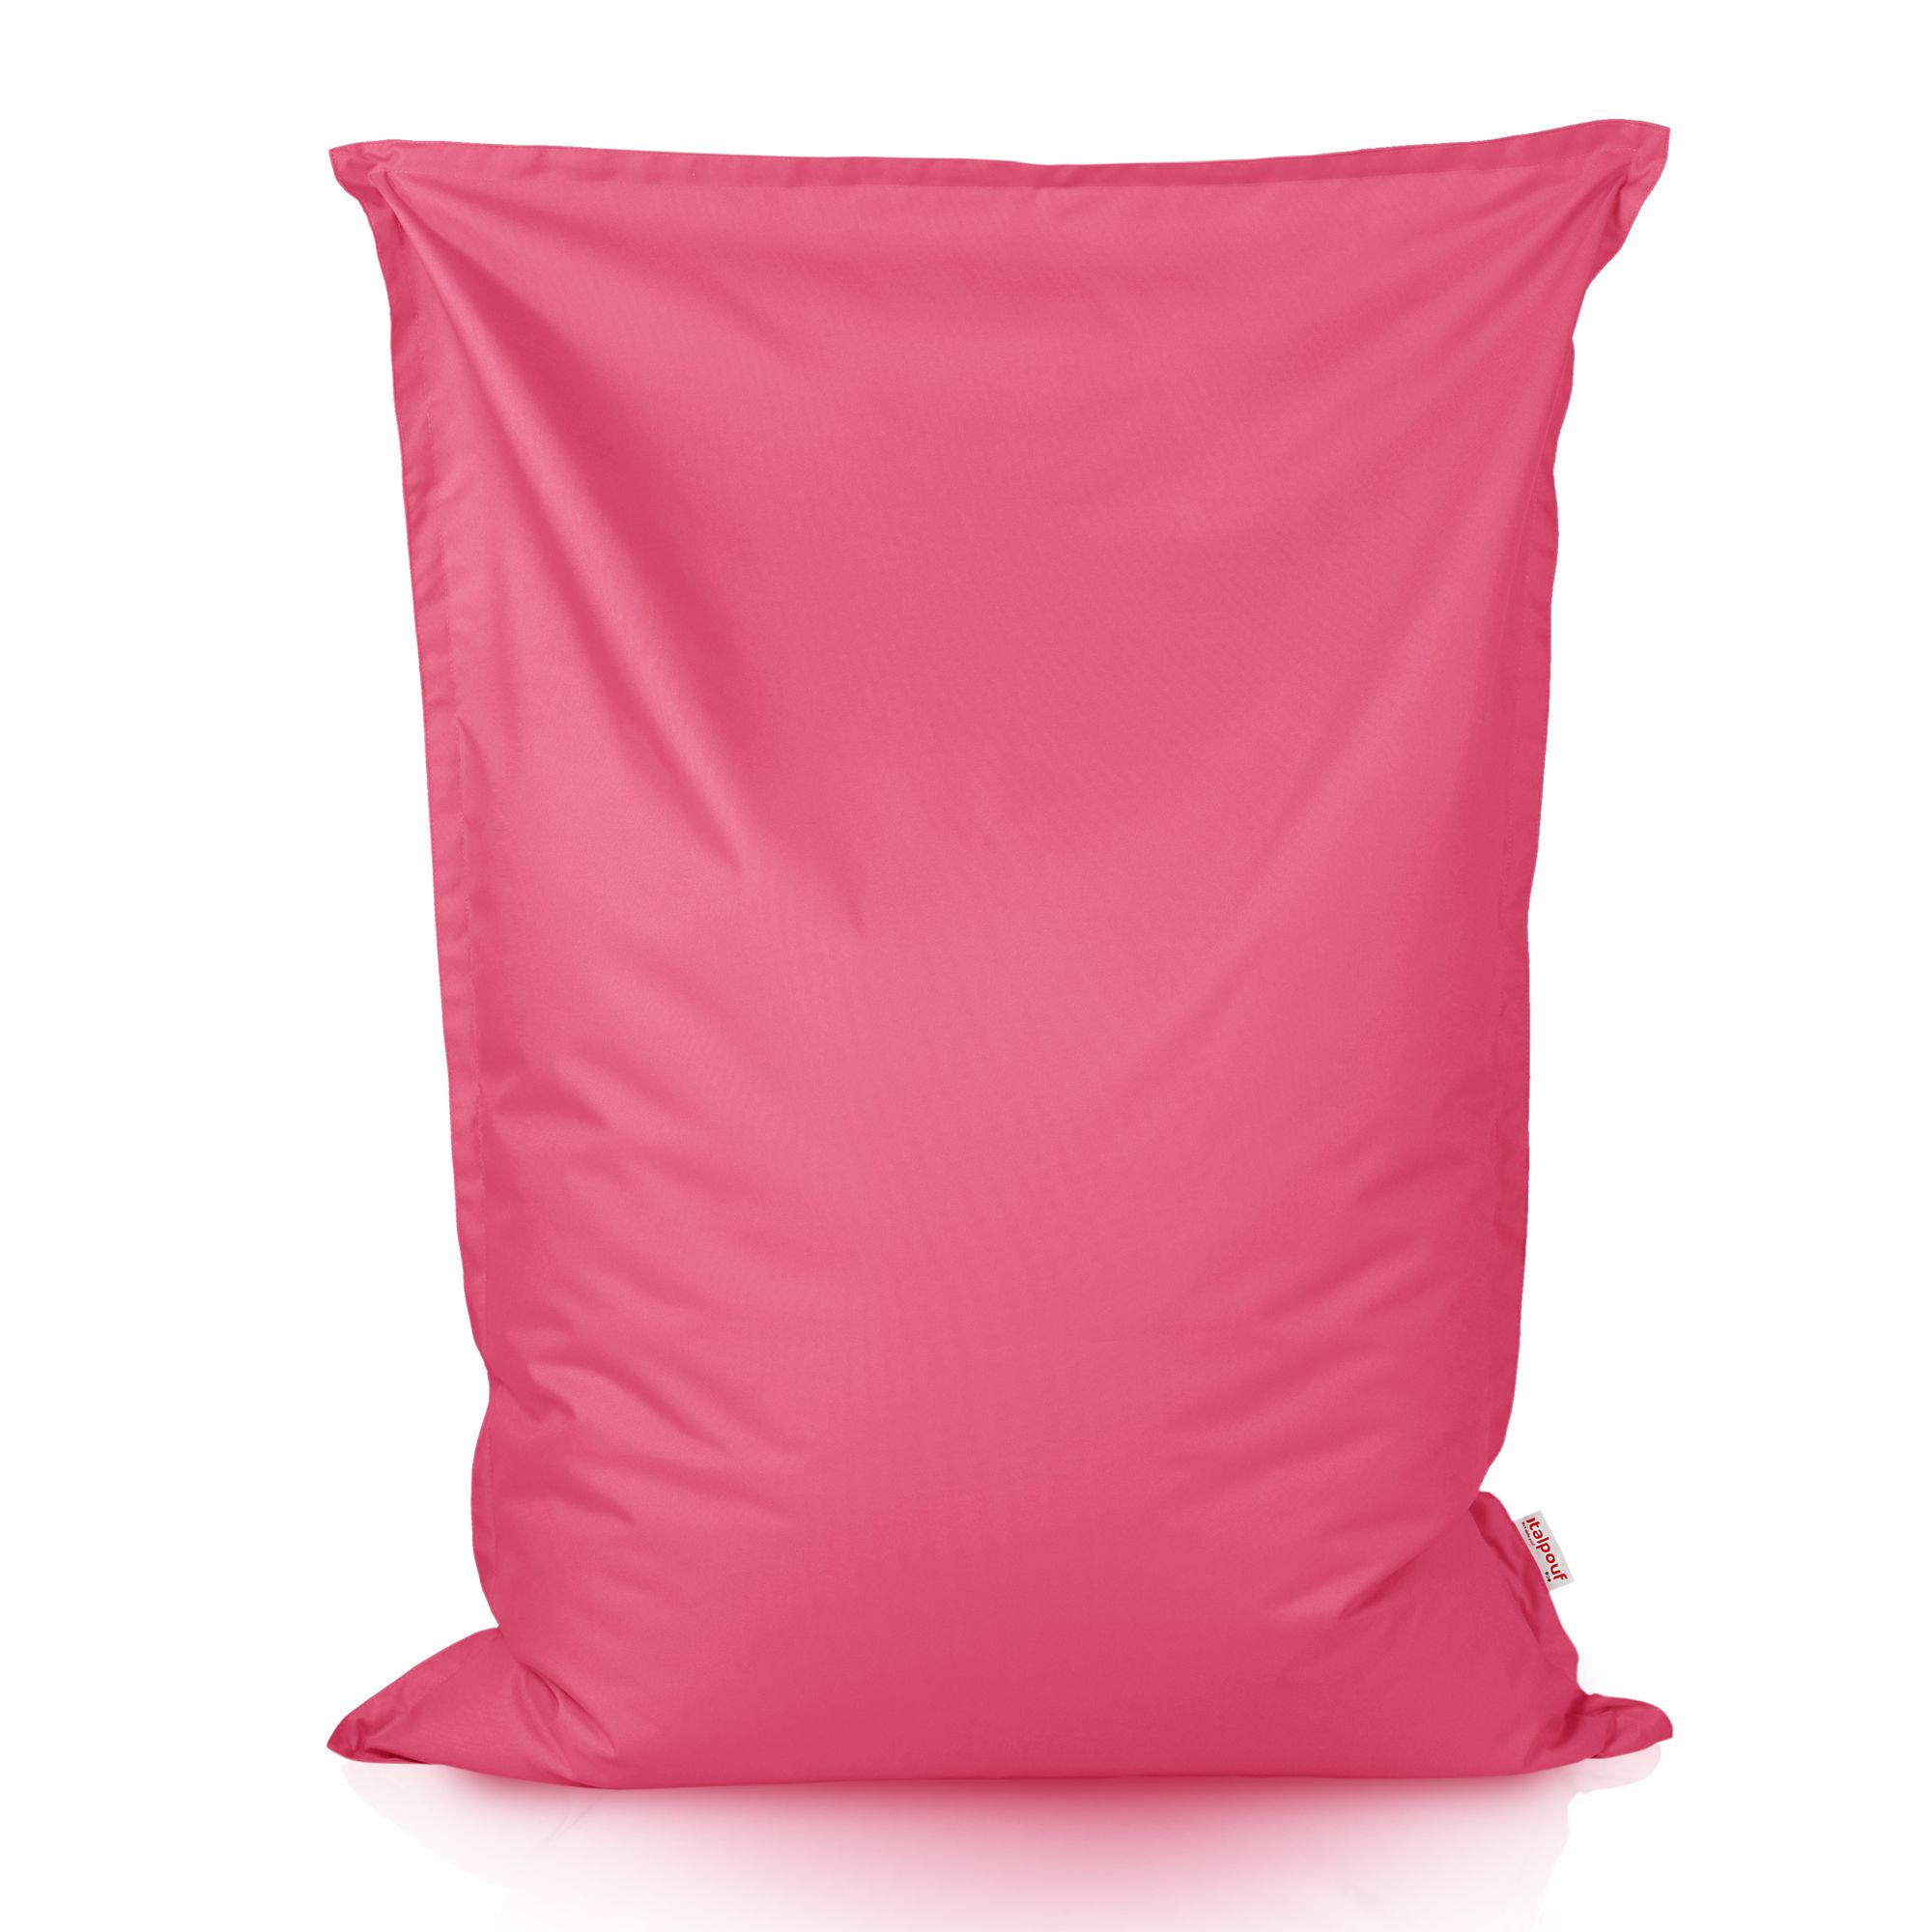 Cuscino gigante da giardino rosa nylon. Pouf sacco rettangolare